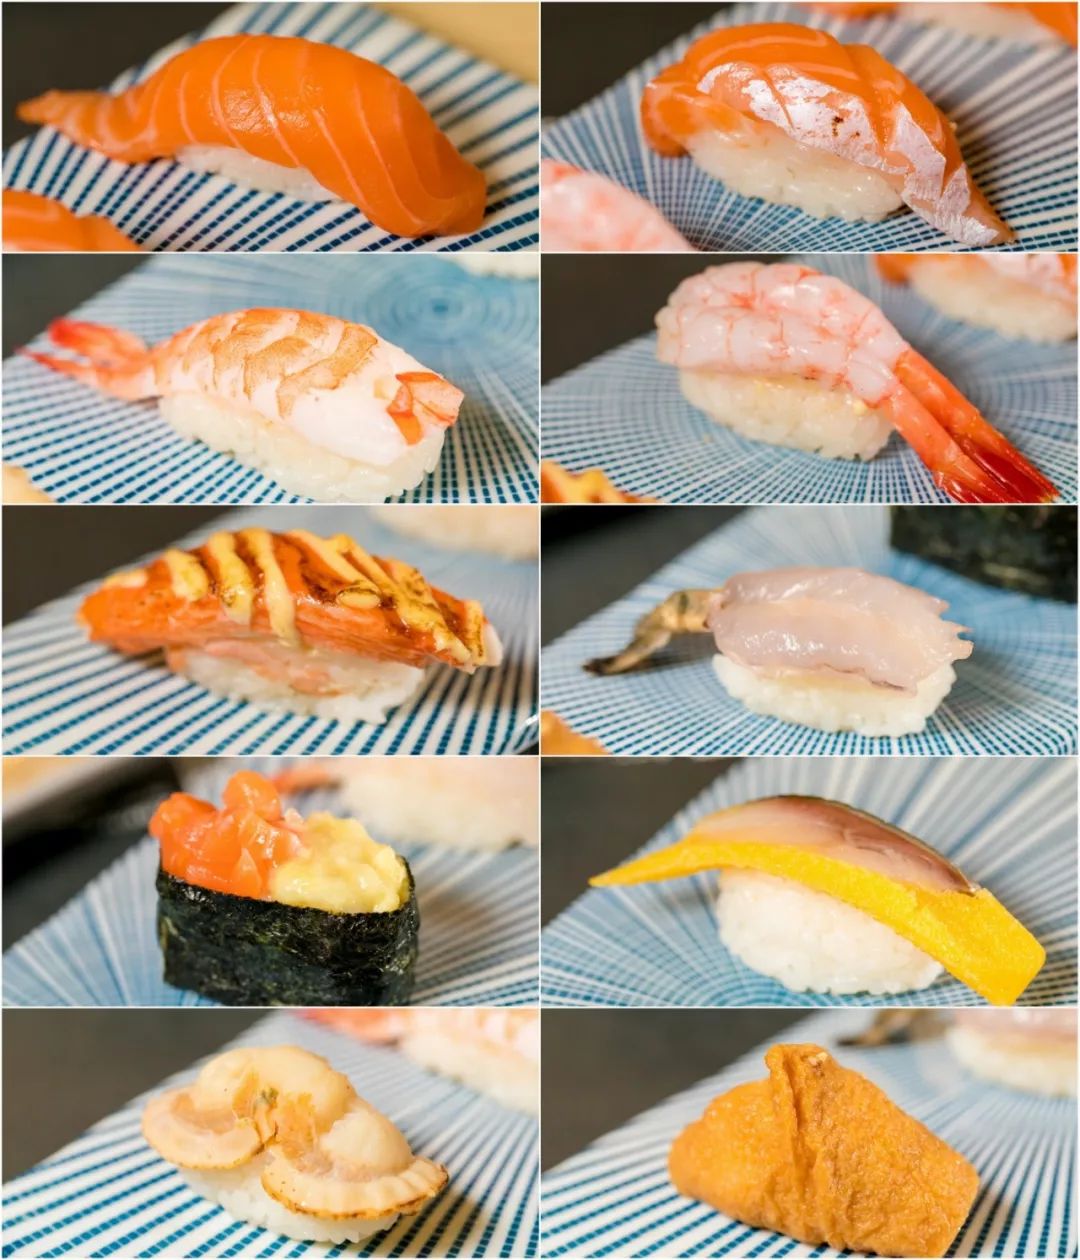 天河最抵食的"寿司刺身双航母",填满你258g的